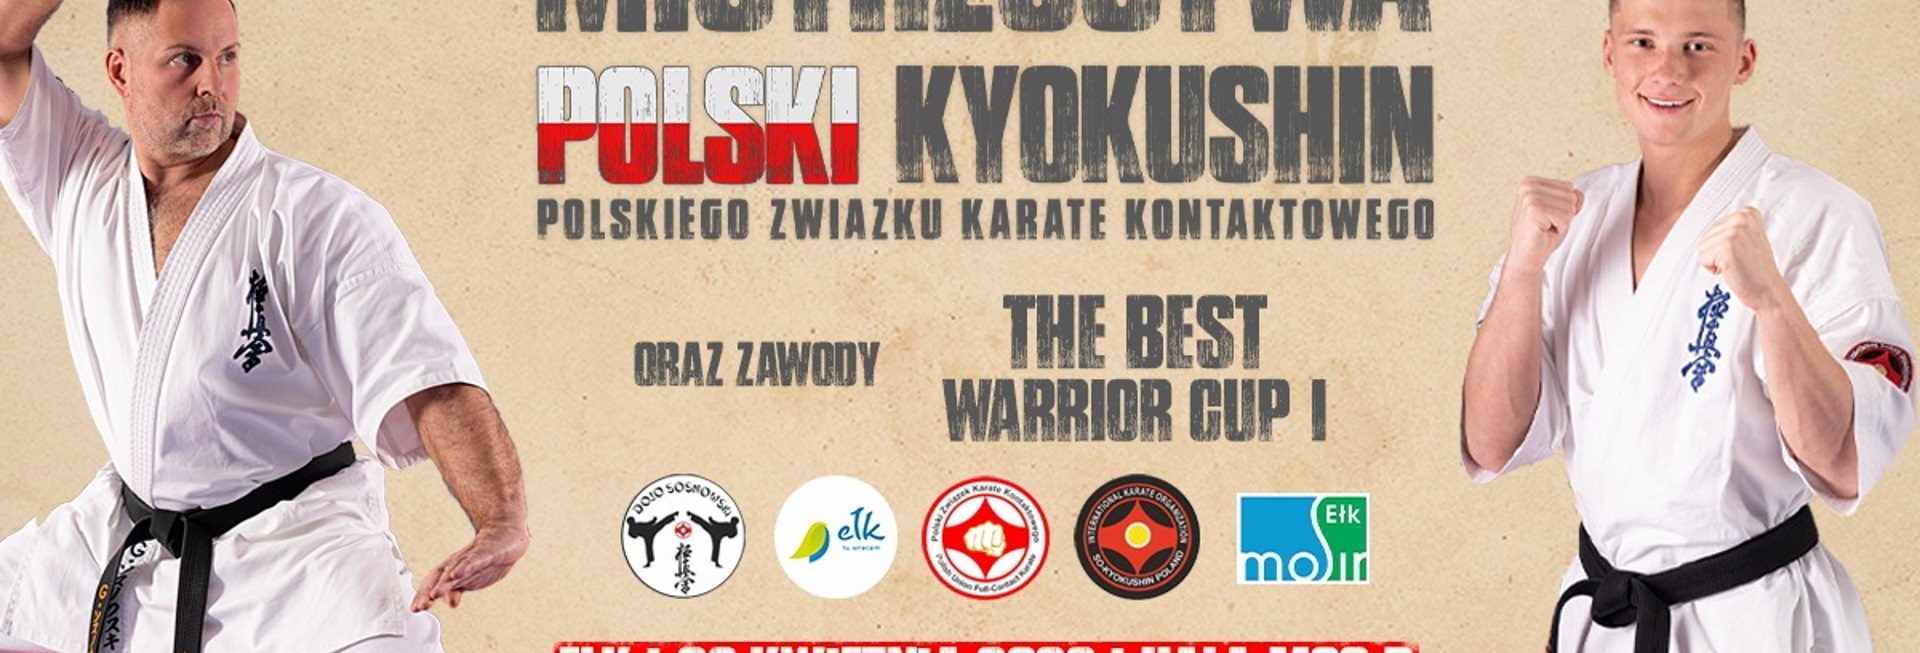 Plakat graficzny zapraszający do Ełku na Mistrzostwa Polski Kyokushin Ełk 2022.